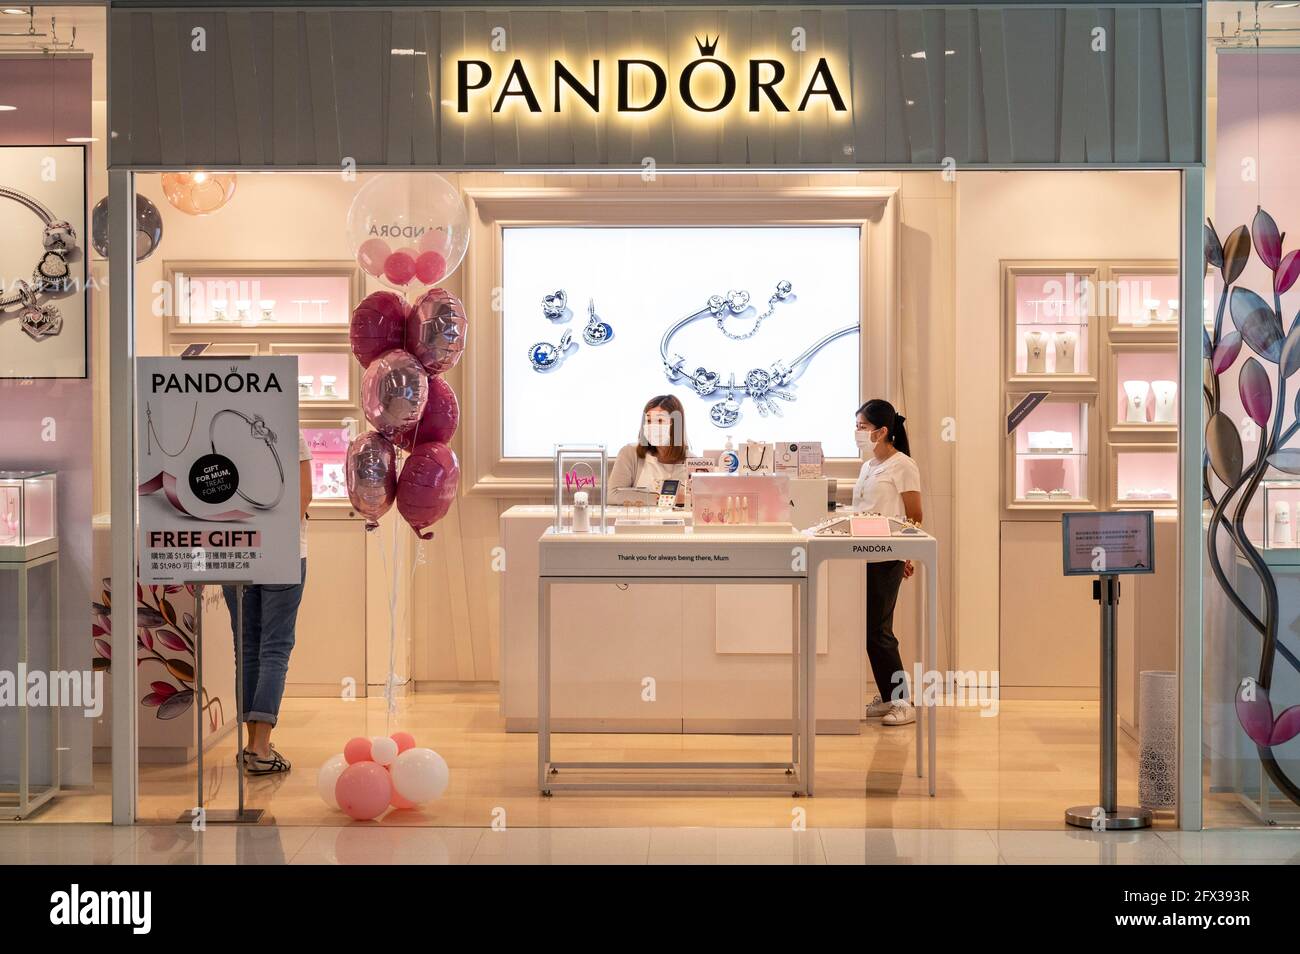 Dänischer Schmuckhersteller und Einzelhändler, Pandora Geschäft in Hongkong  gesehen Stockfotografie - Alamy